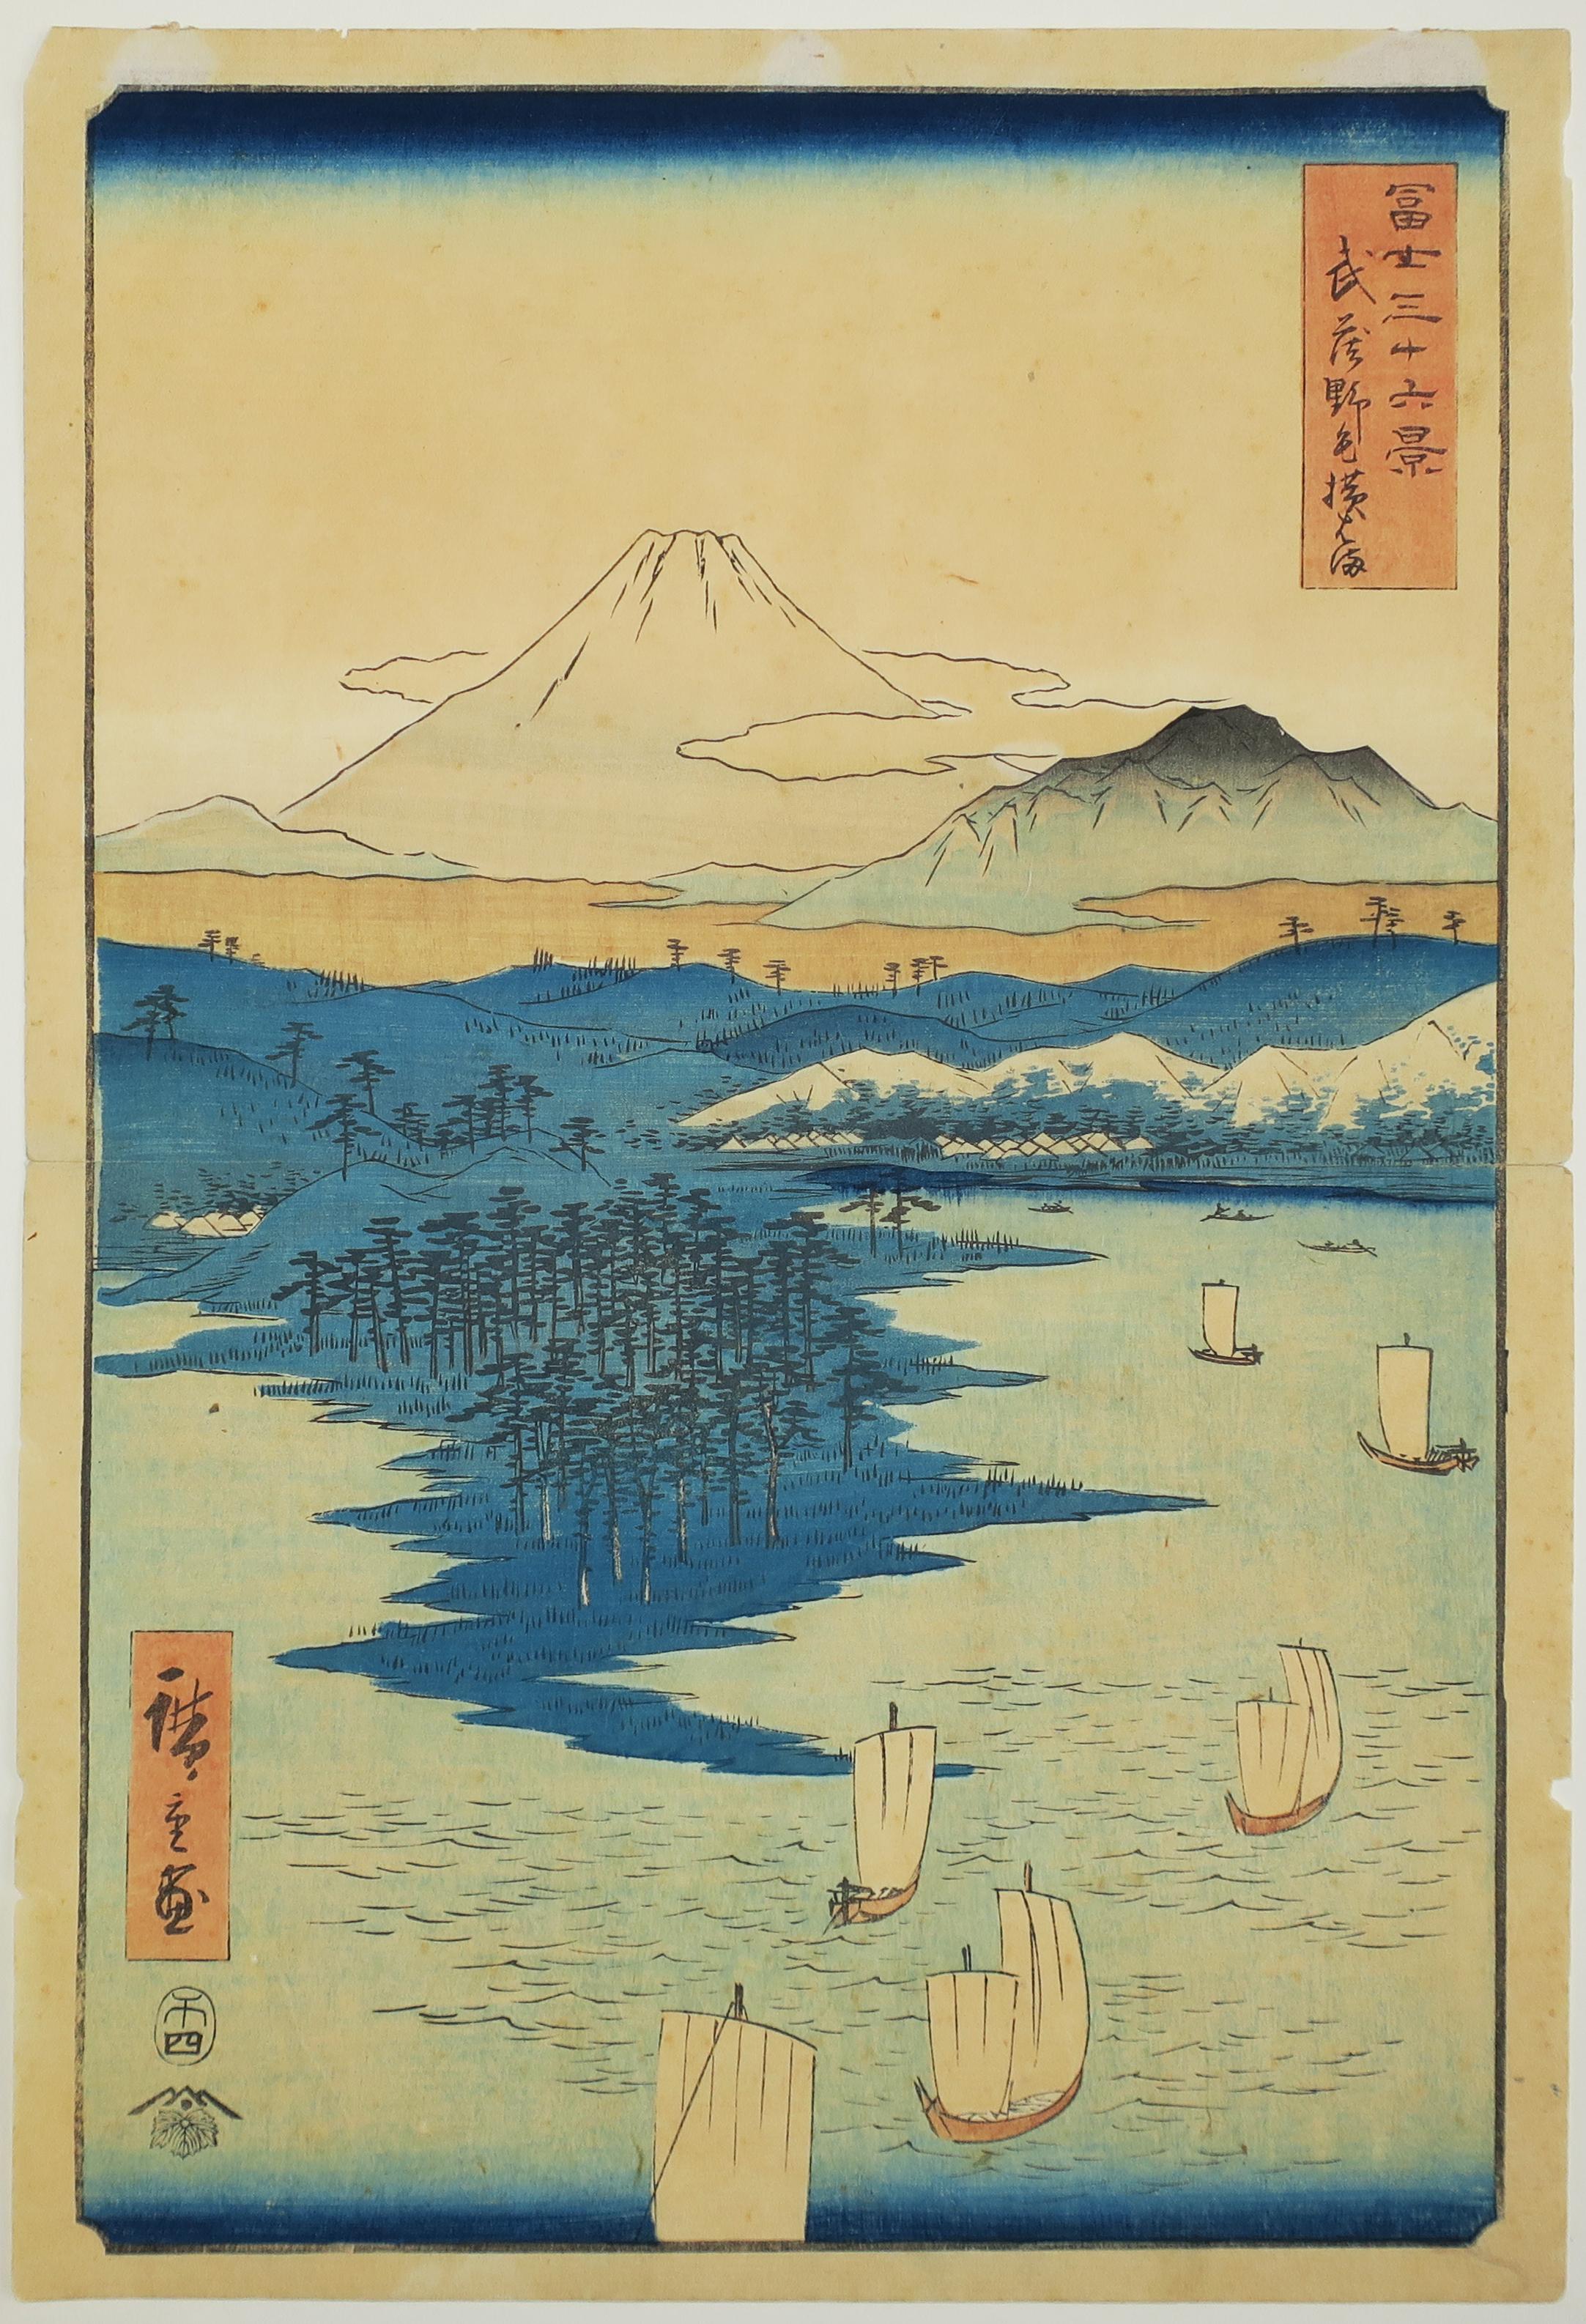 Utagawa Hiroshige (Ando Hiroshige) Landscape Print - Noge et Yokohama dans la province de Musashi. 1858.